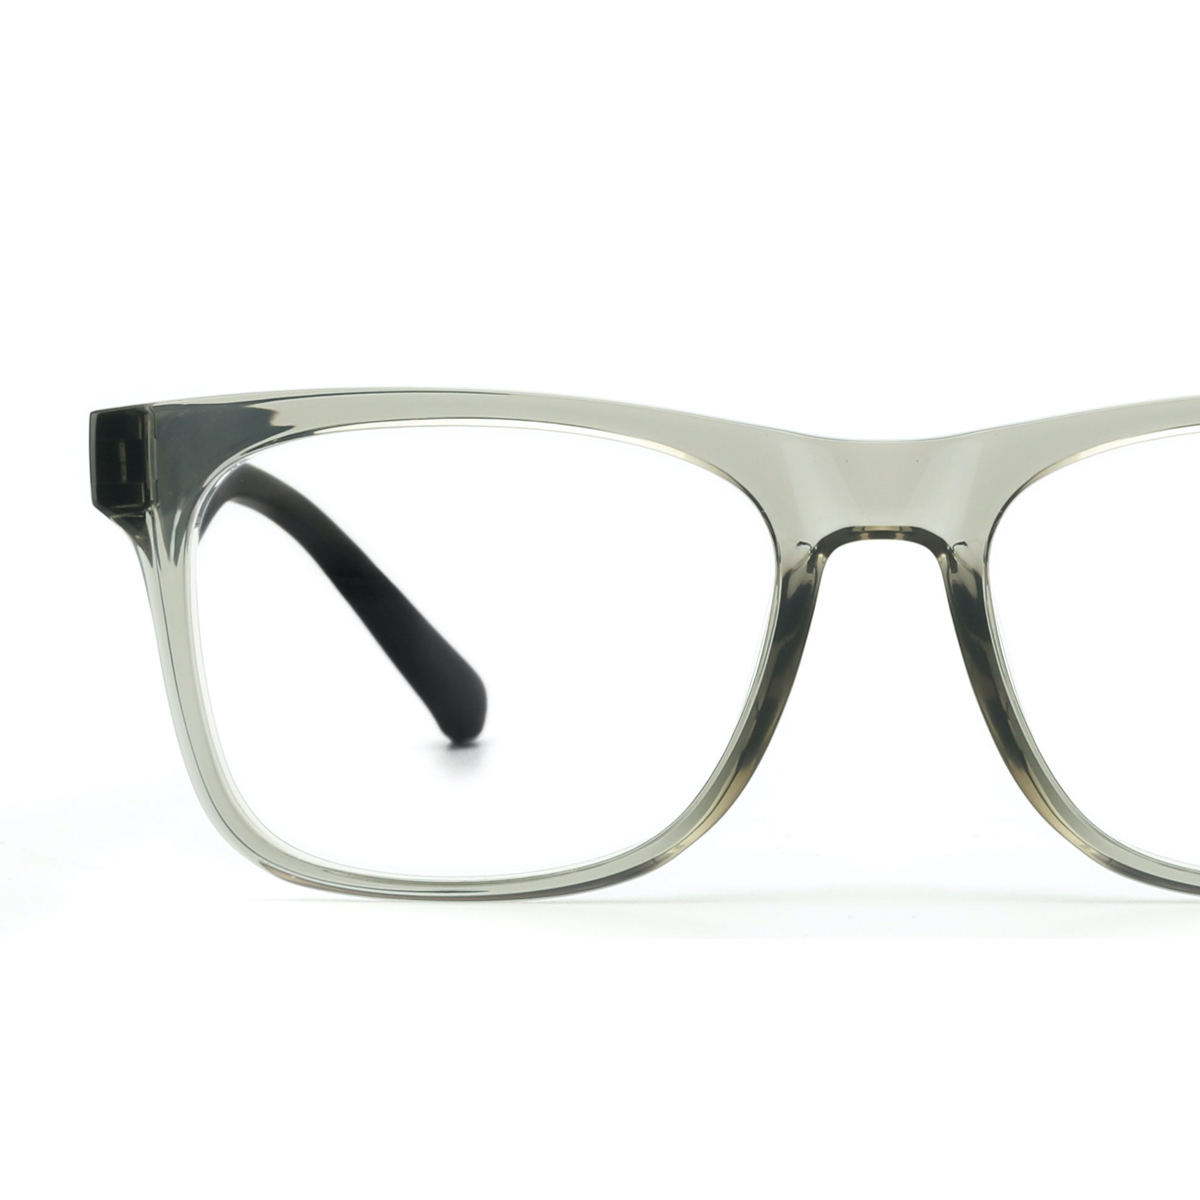 PQ眼镜上海配眼镜近视镜实体店复古文艺防蓝光镜片加散光防辐射30-封面